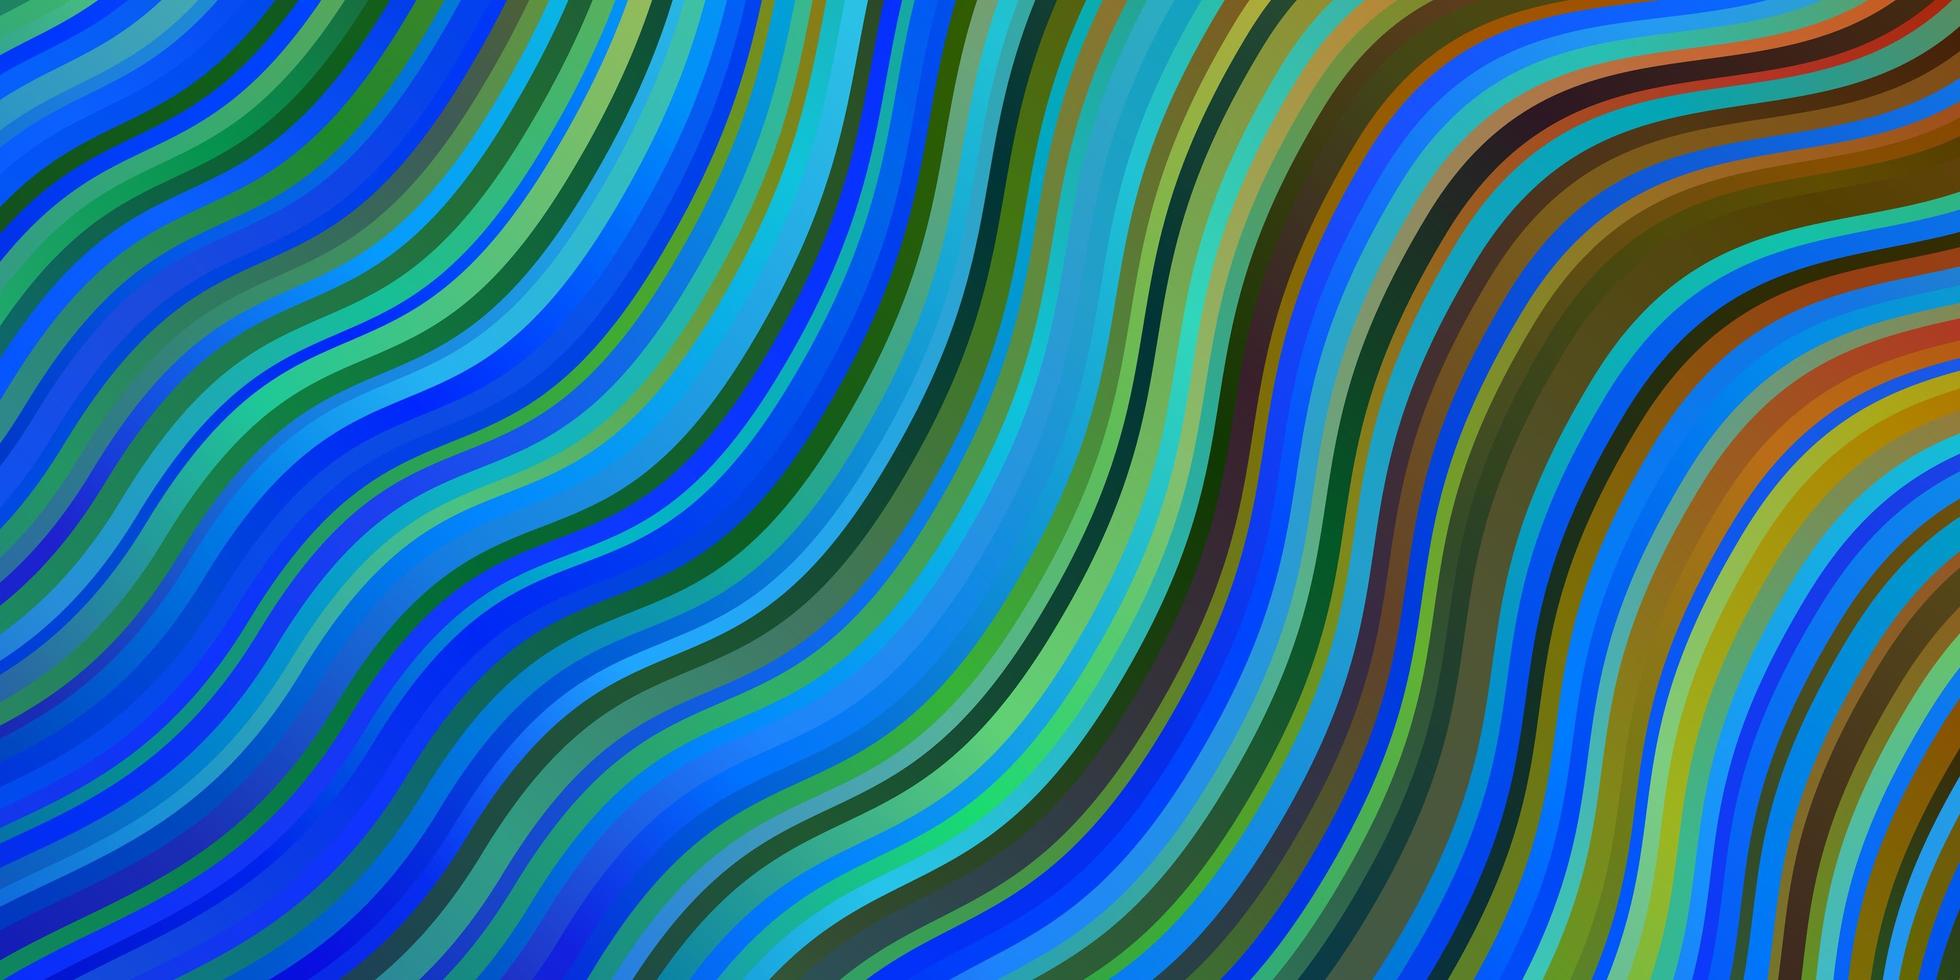 mörk flerfärgad vektormall med snygga linjer helt ny färgglad illustration med böjda linjer mönster för reklamannonser vektor